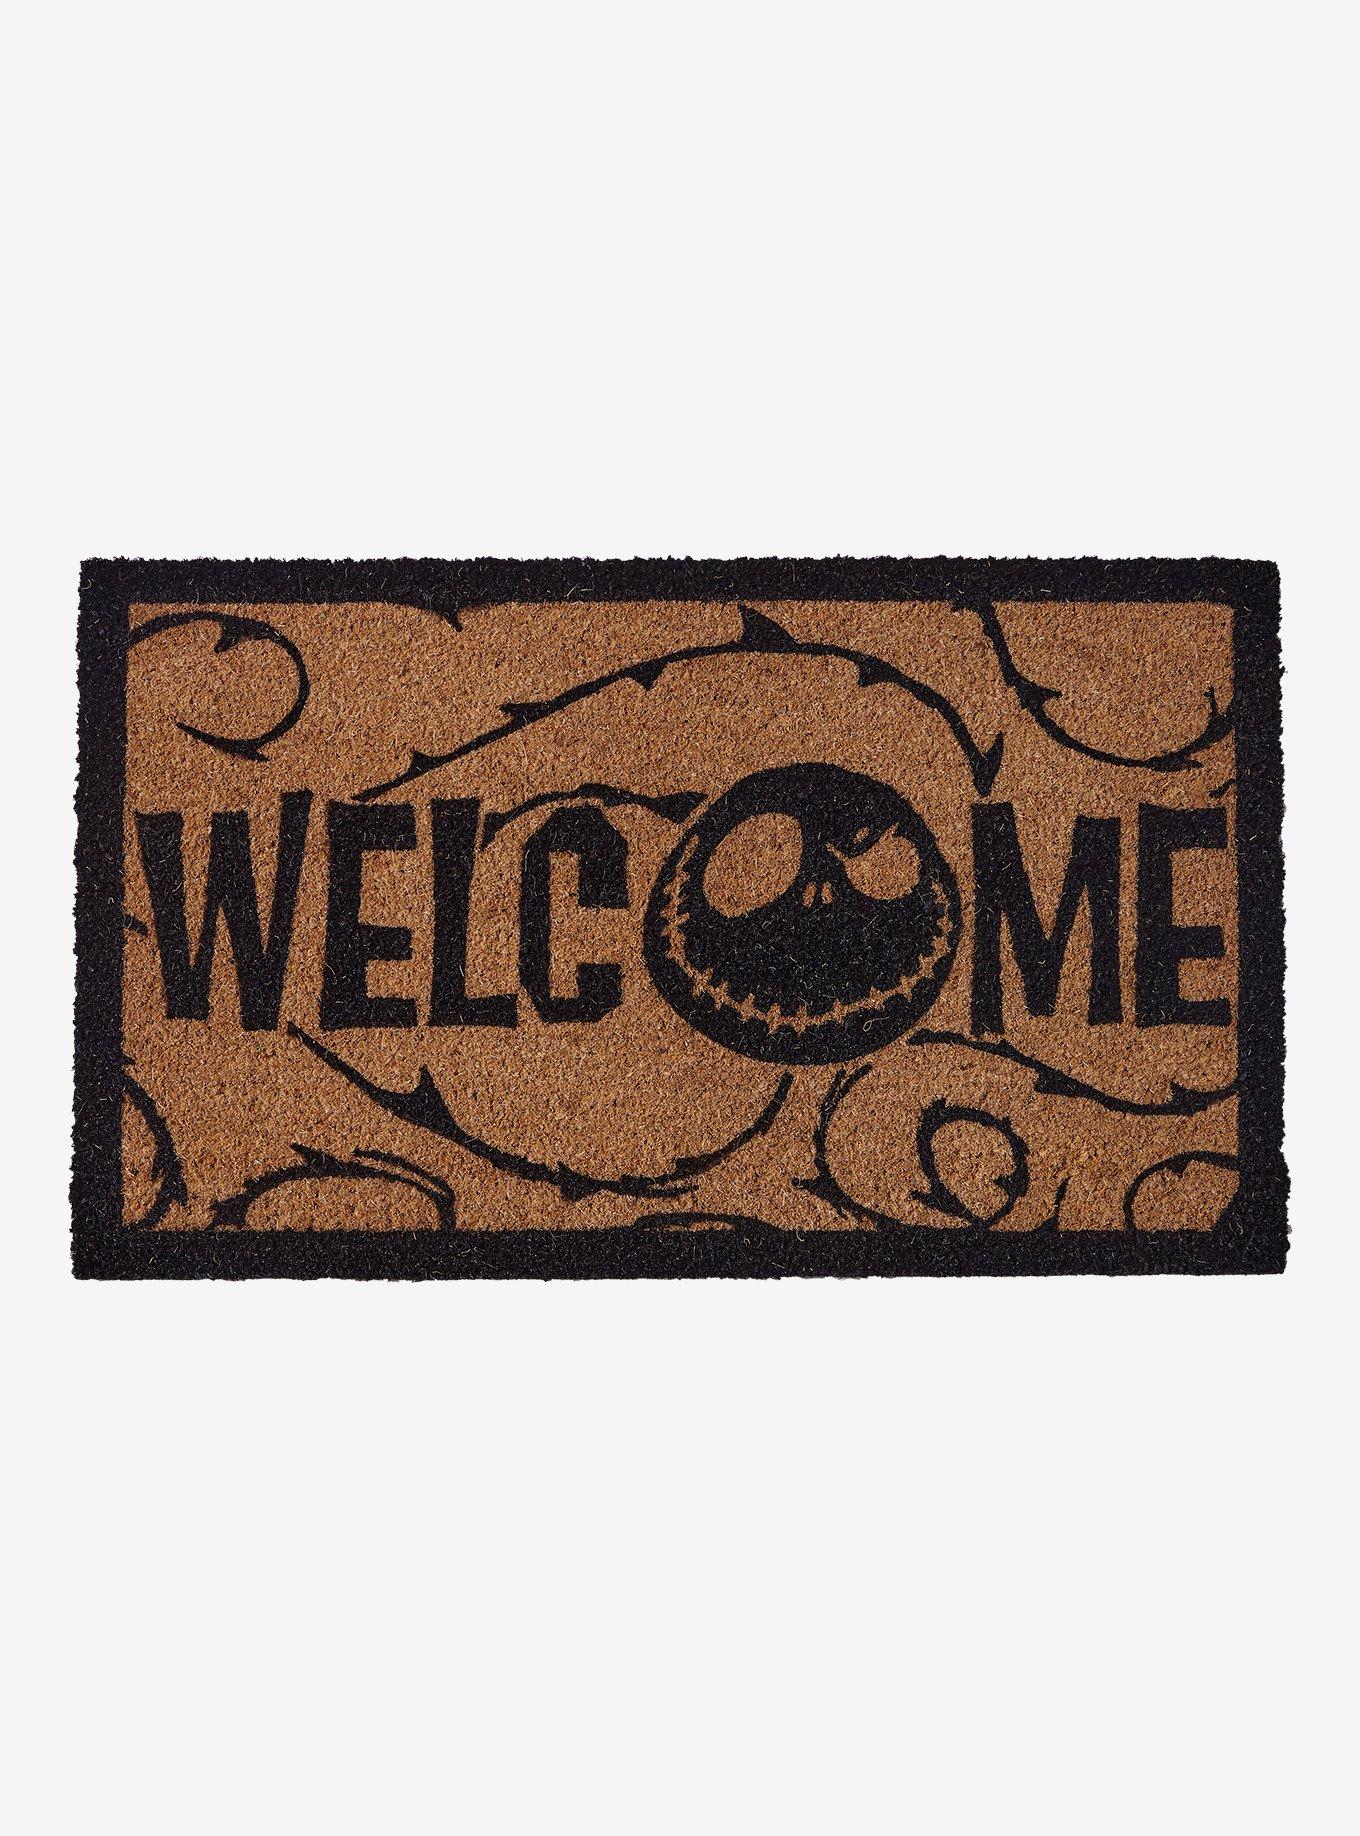 Jack Skellington Welcome Doormat